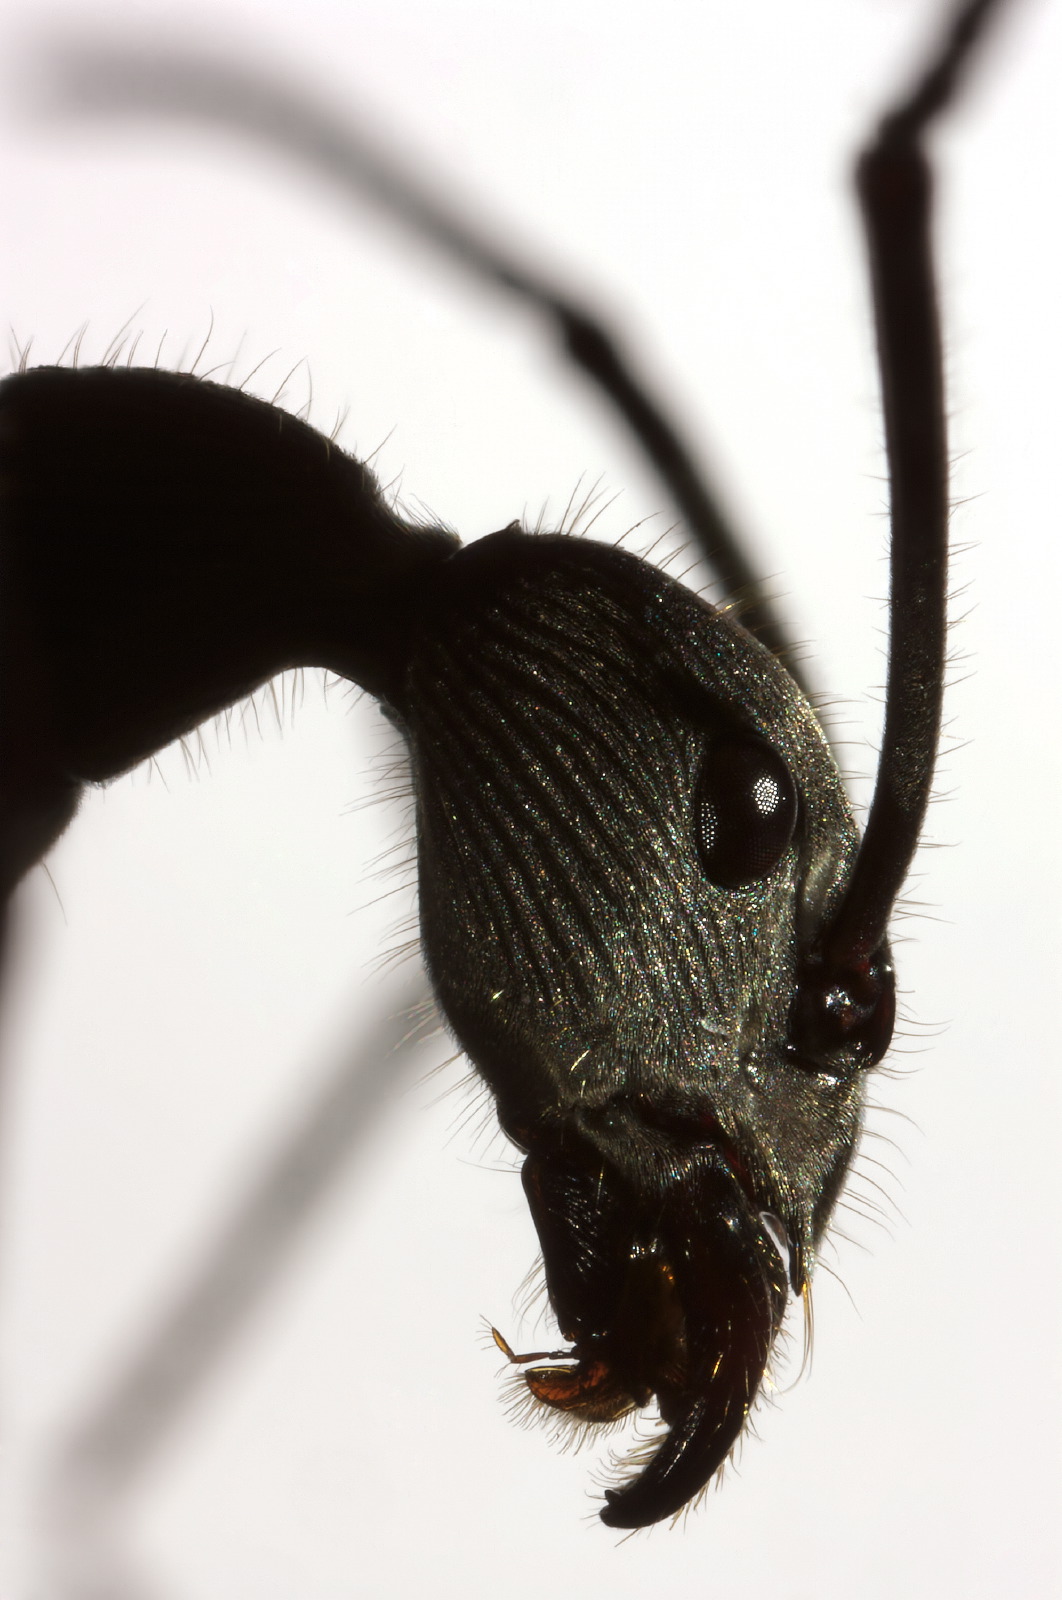 Diacamma ant portrait close-up profil